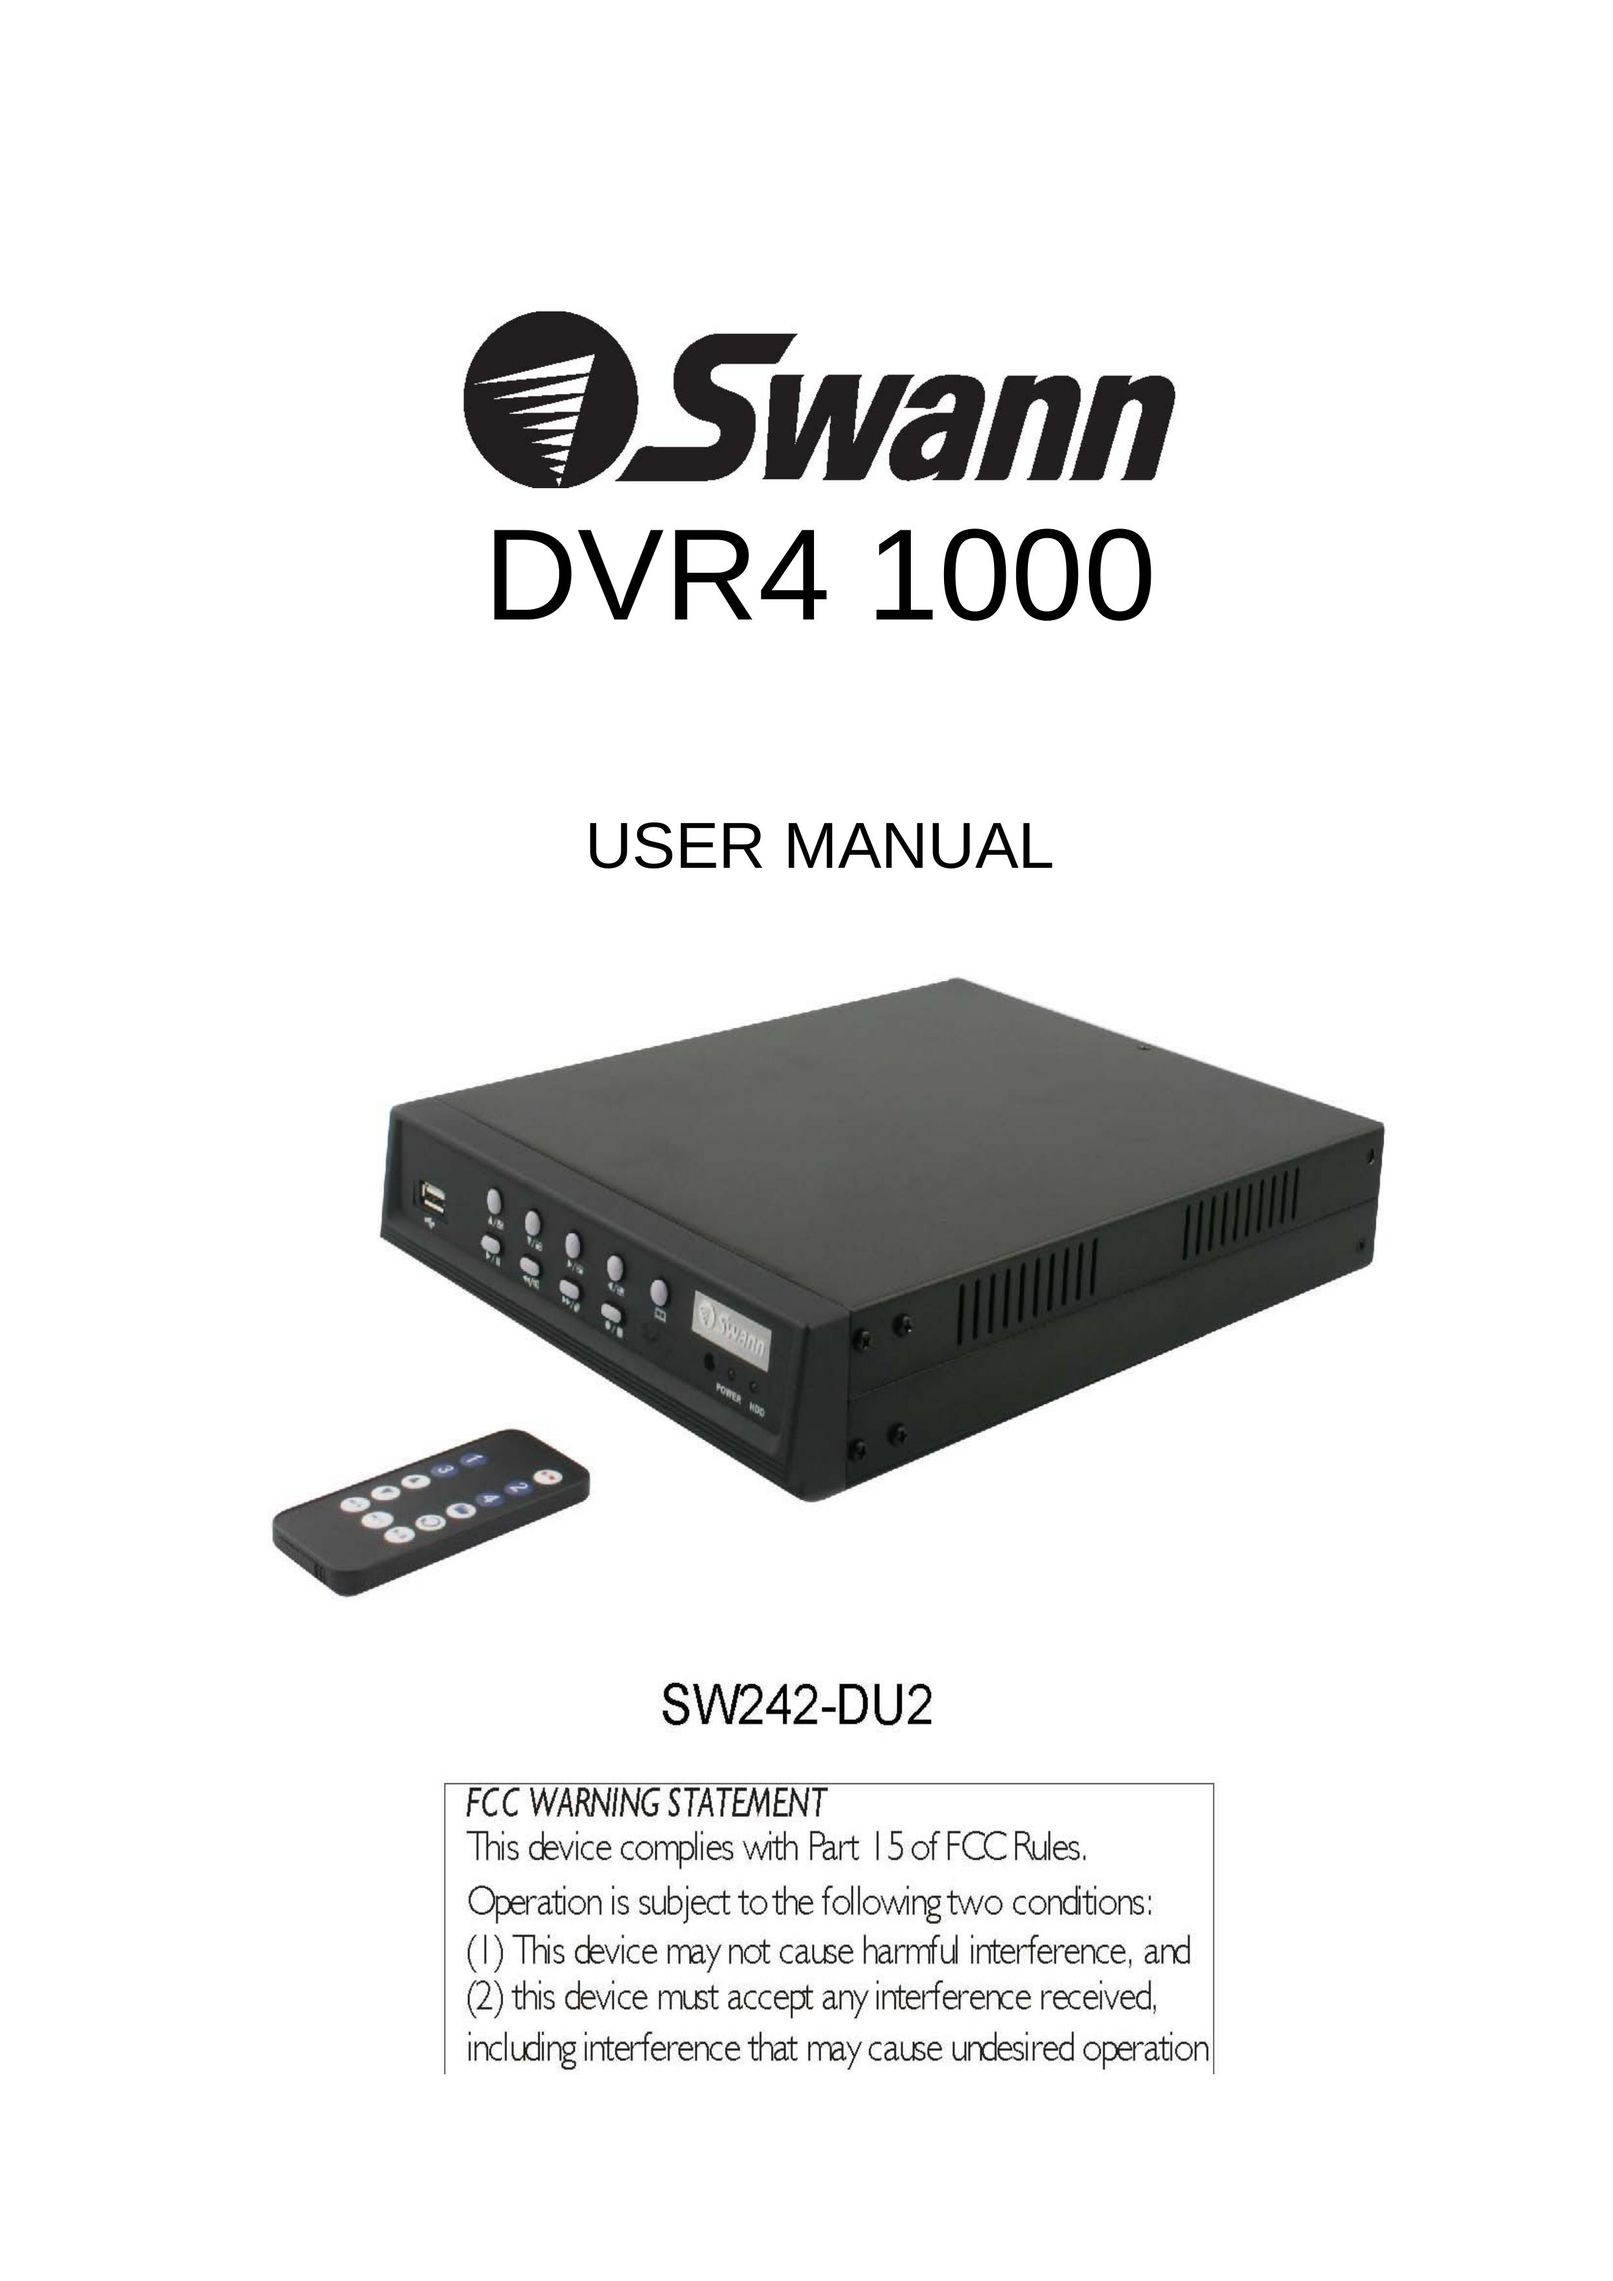 Swann dvr4 1000 DVR User Manual